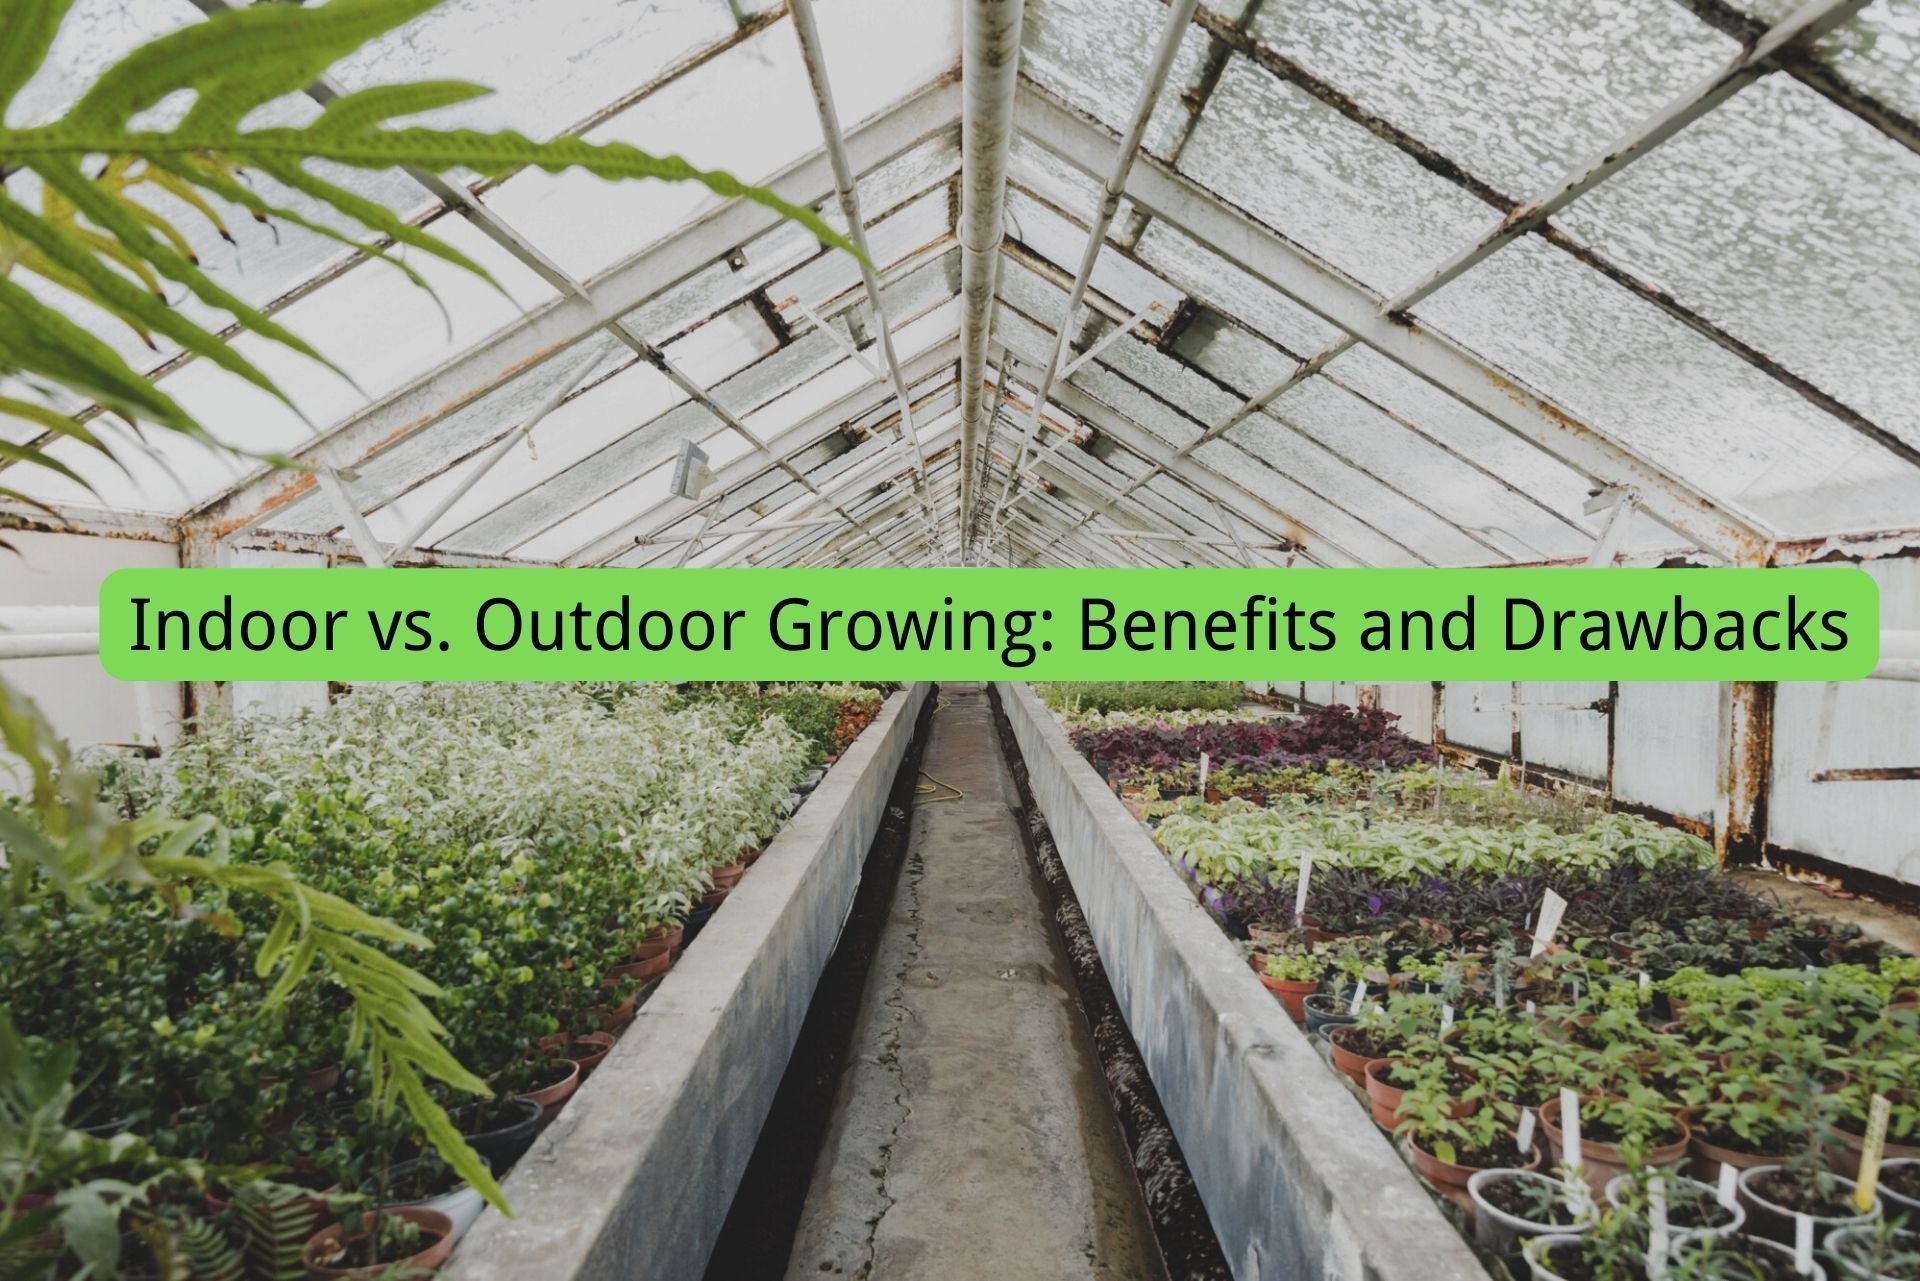 Indoor vs. Outdoor Growing: Benefits and Drawbacks